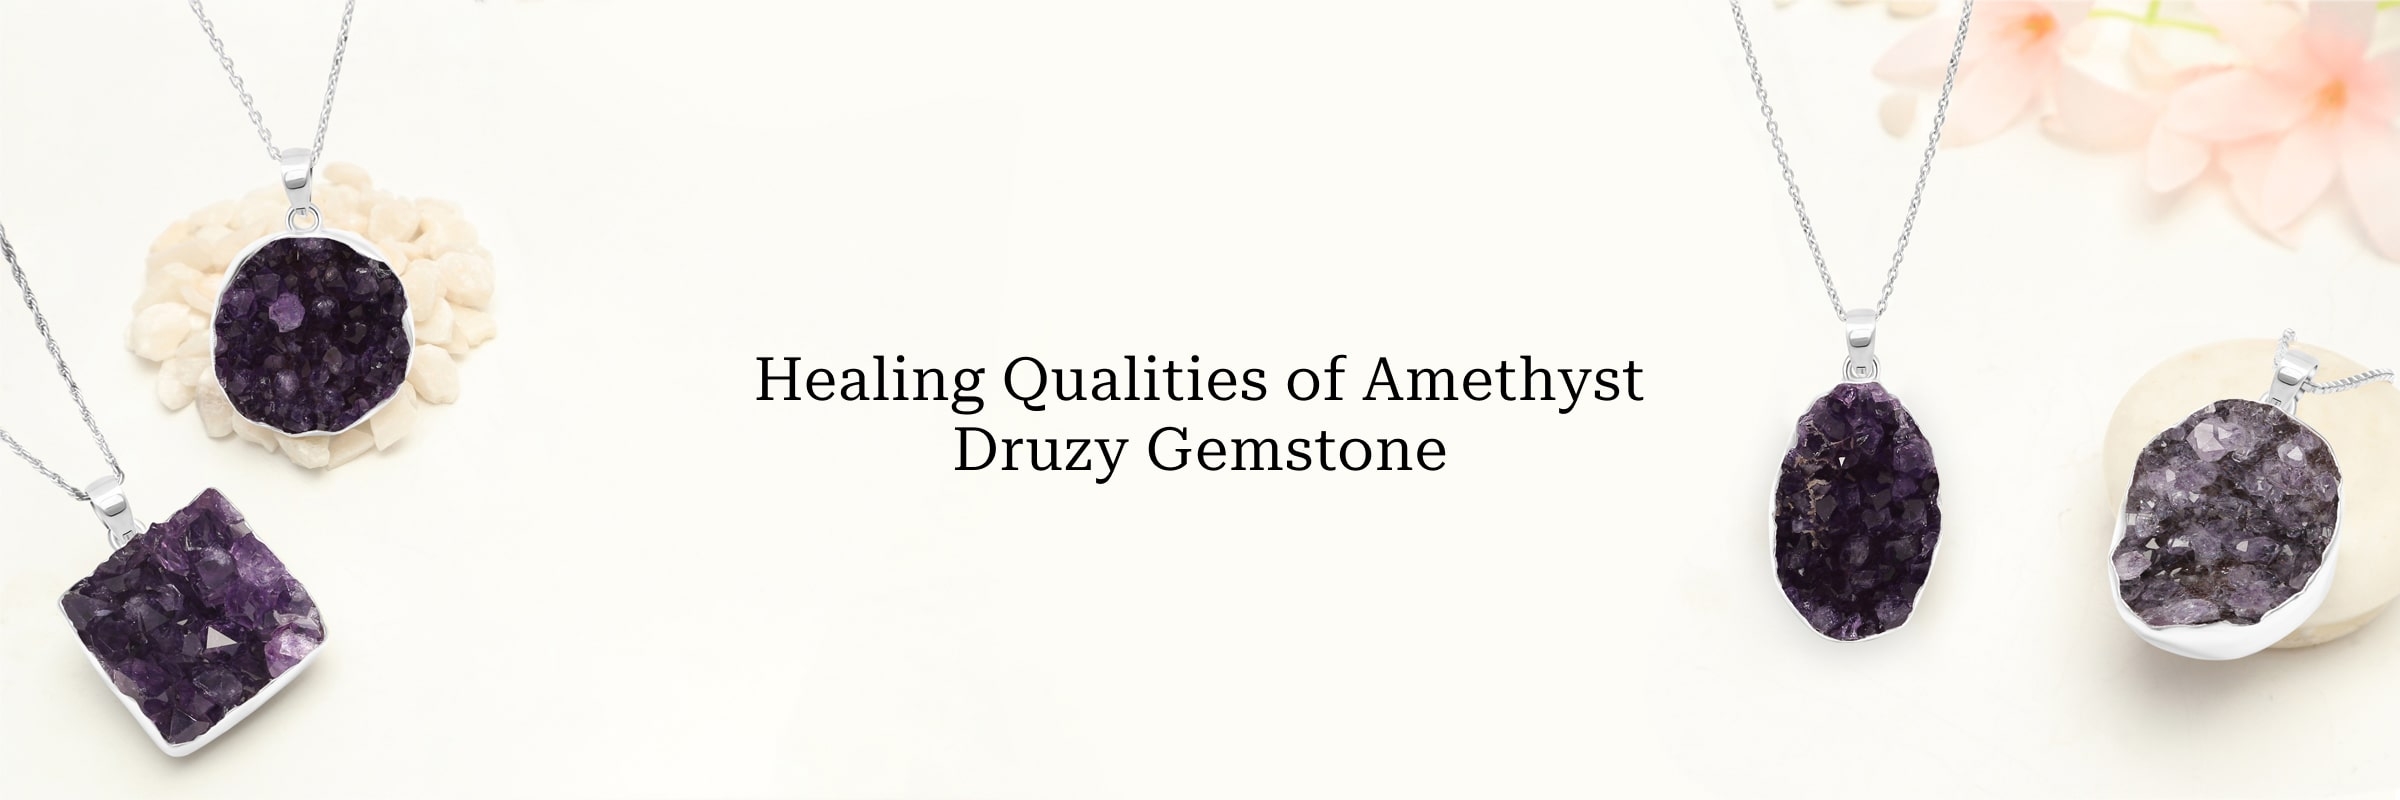 Healing Properties of Amethyst Druzy Gemstone